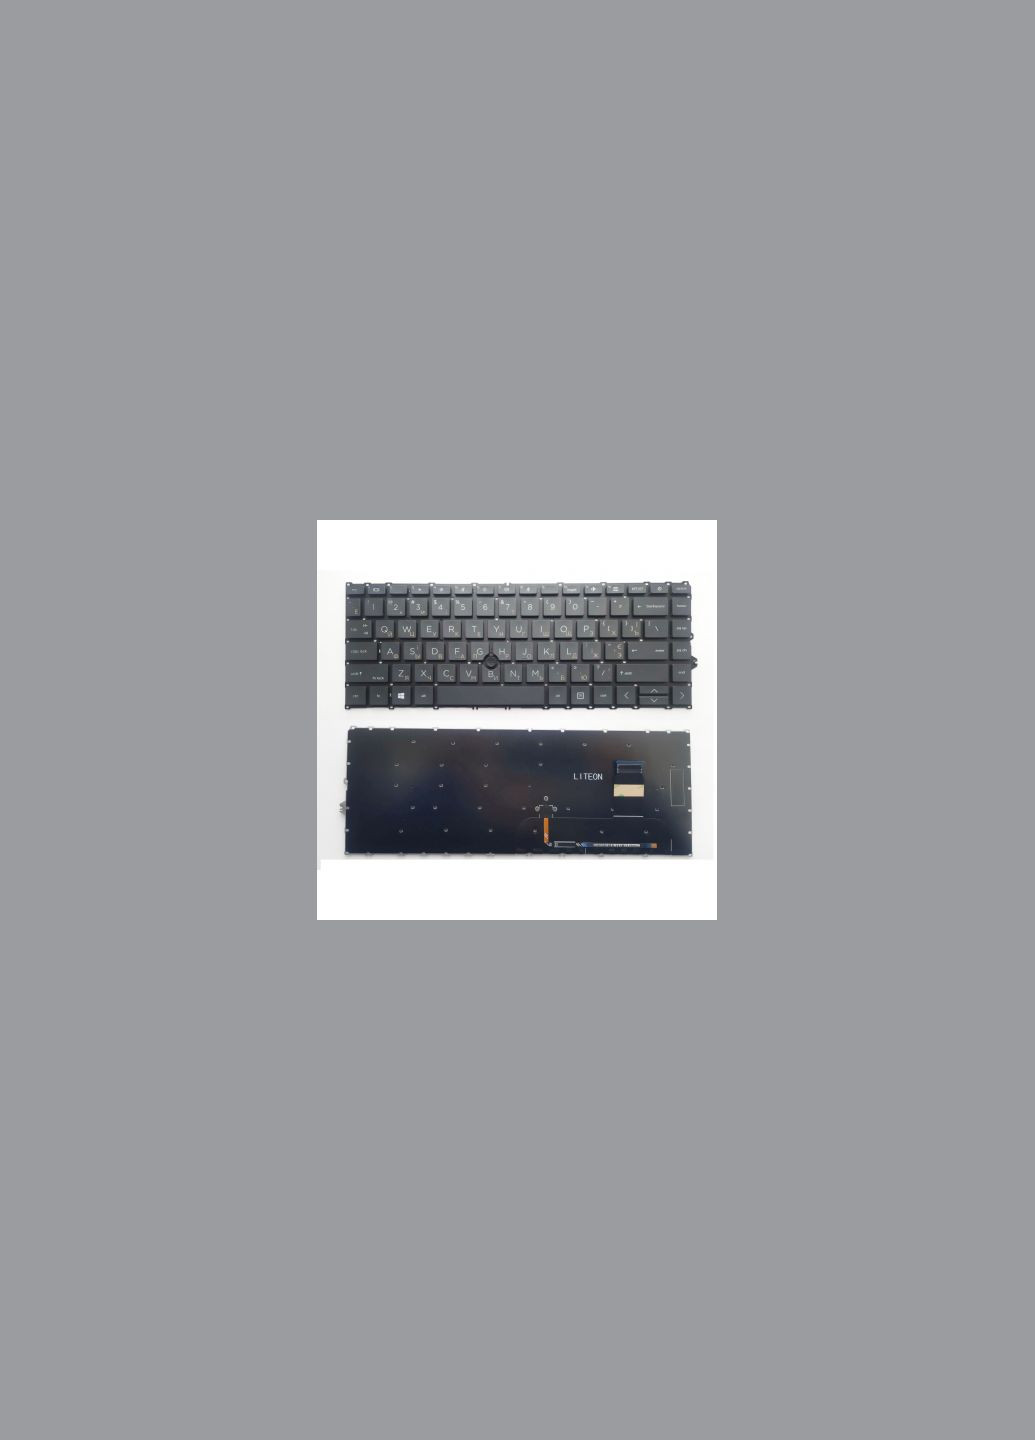 Клавиатура ноутбука EliteBook 745 G7/G8, 840 G7/G8 черная из ТП UA (A46209) HP elitebook 745 g7/g8, 840 g7/g8 черна з тп ua (278368781)